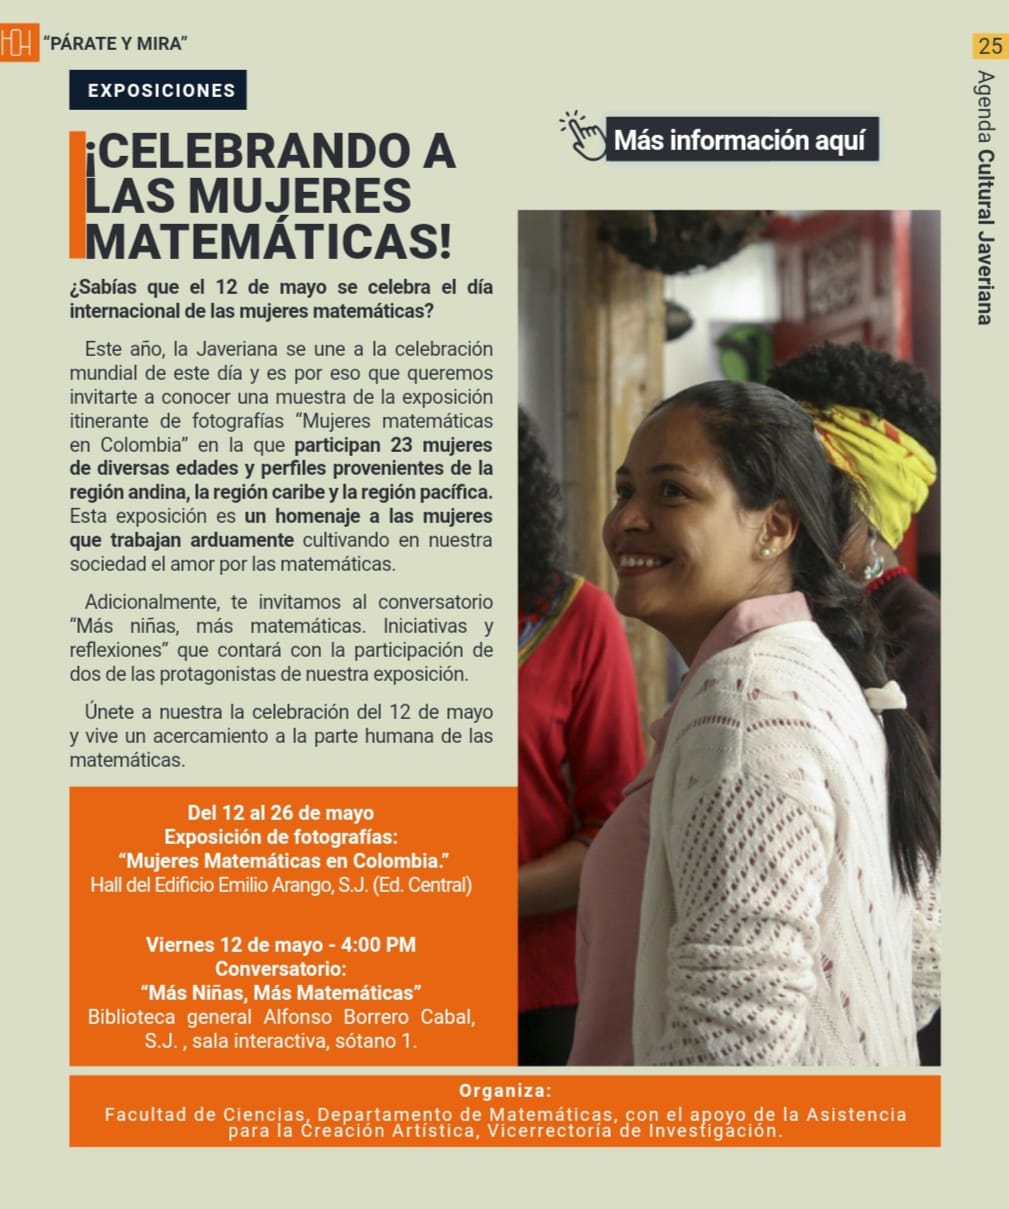 Muestra de la exposición de fotografías Mujeres Matemáticas en Colombia